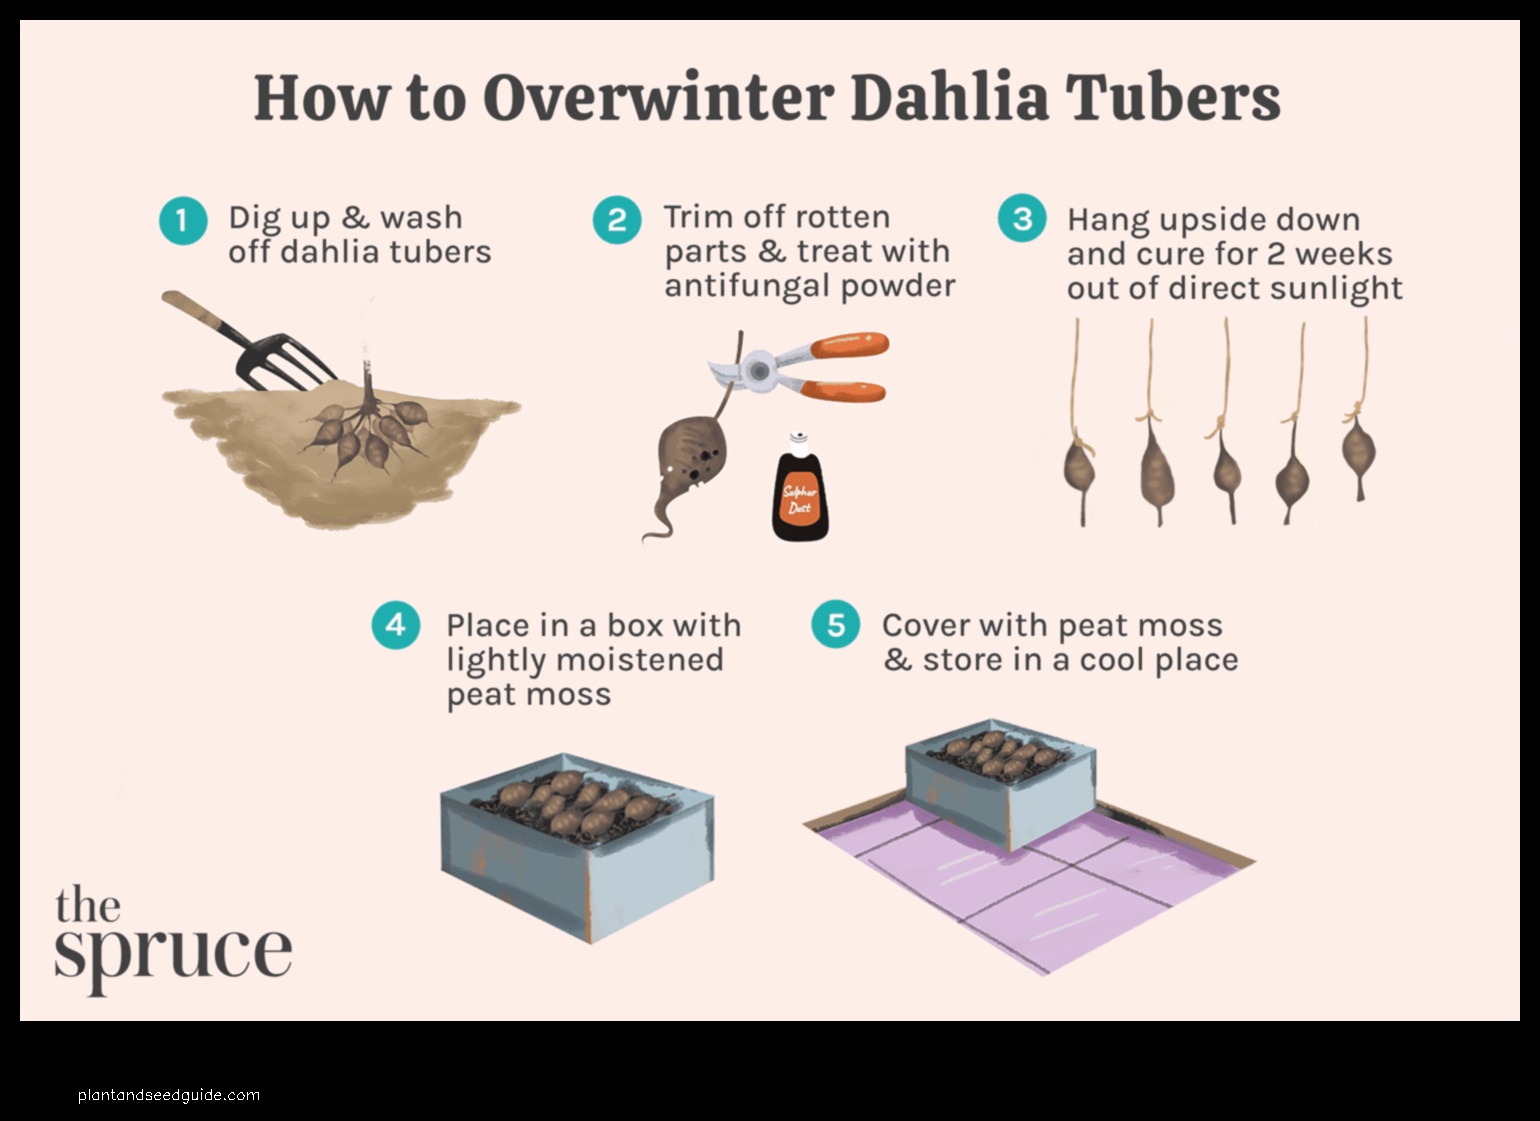 storing dahlia tubers in sawdust